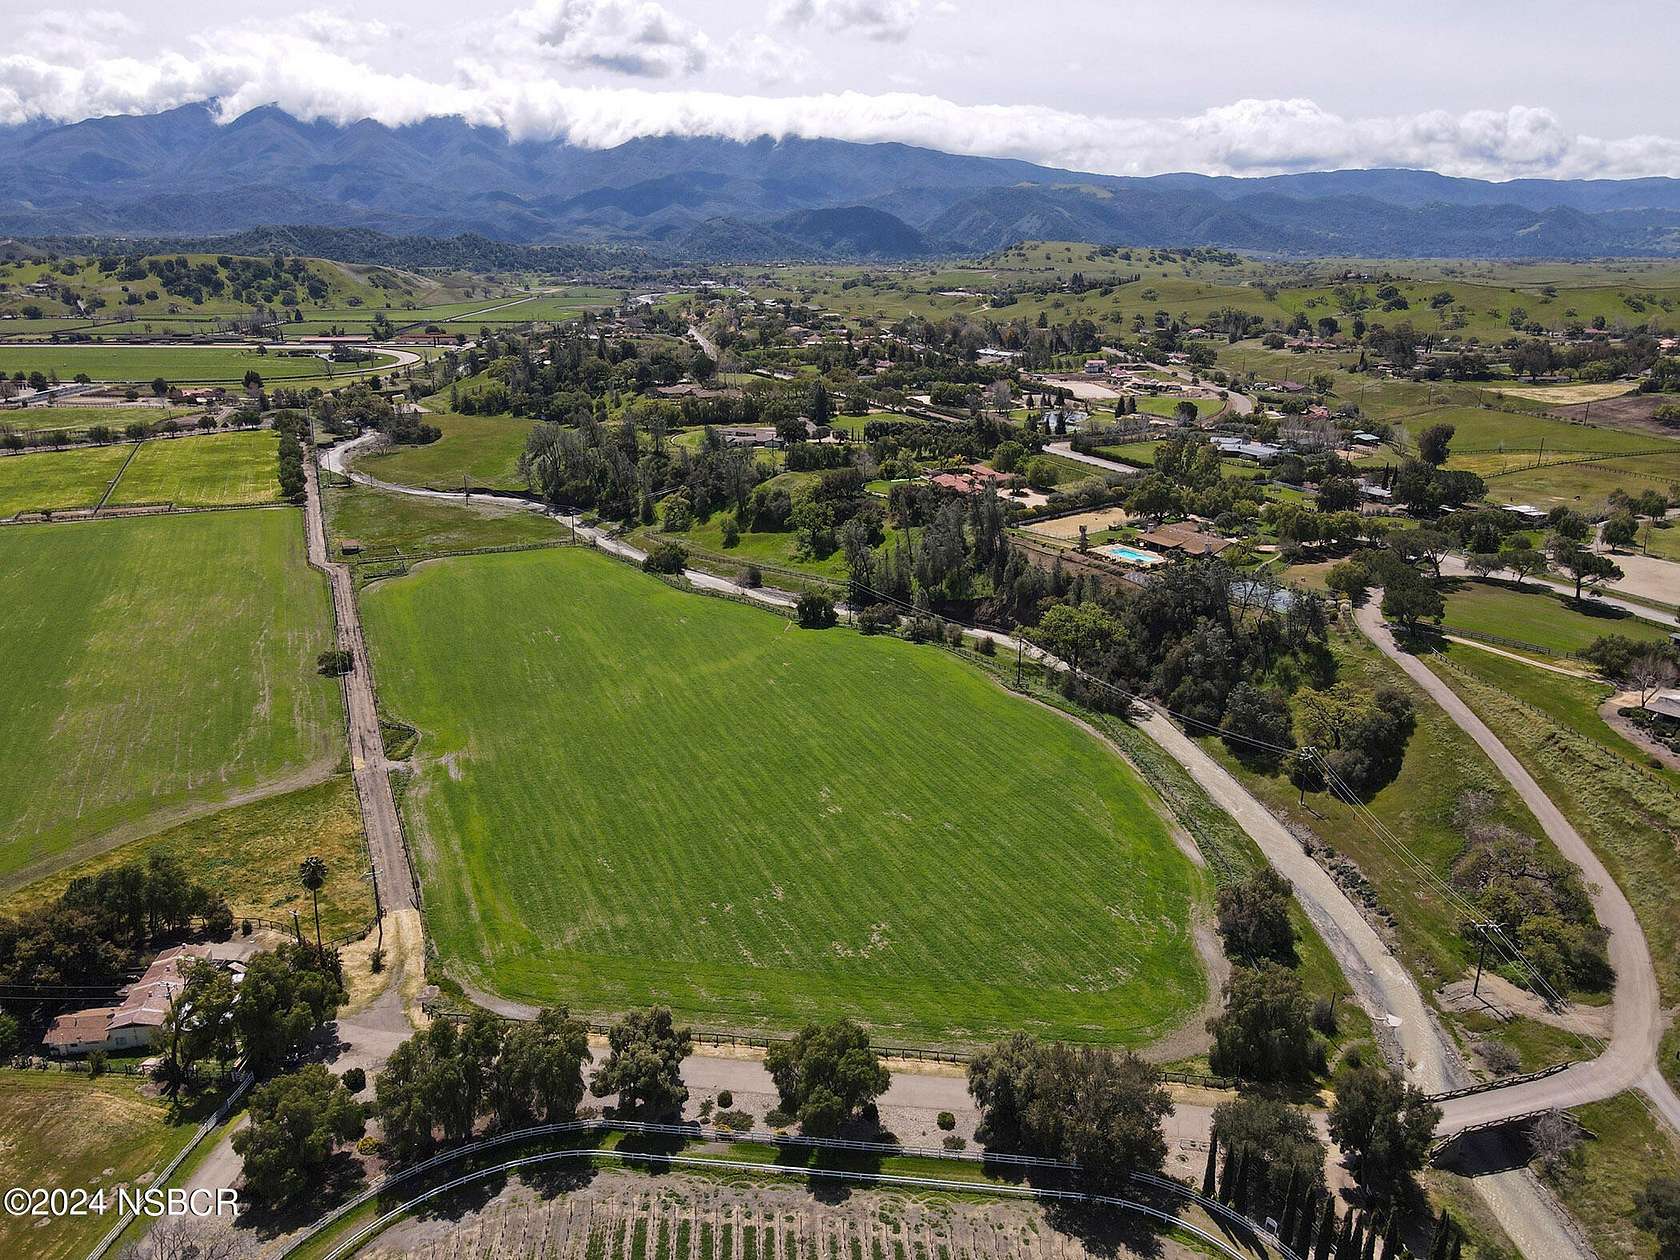 11.5 Acres of Land for Sale in Santa Ynez, California